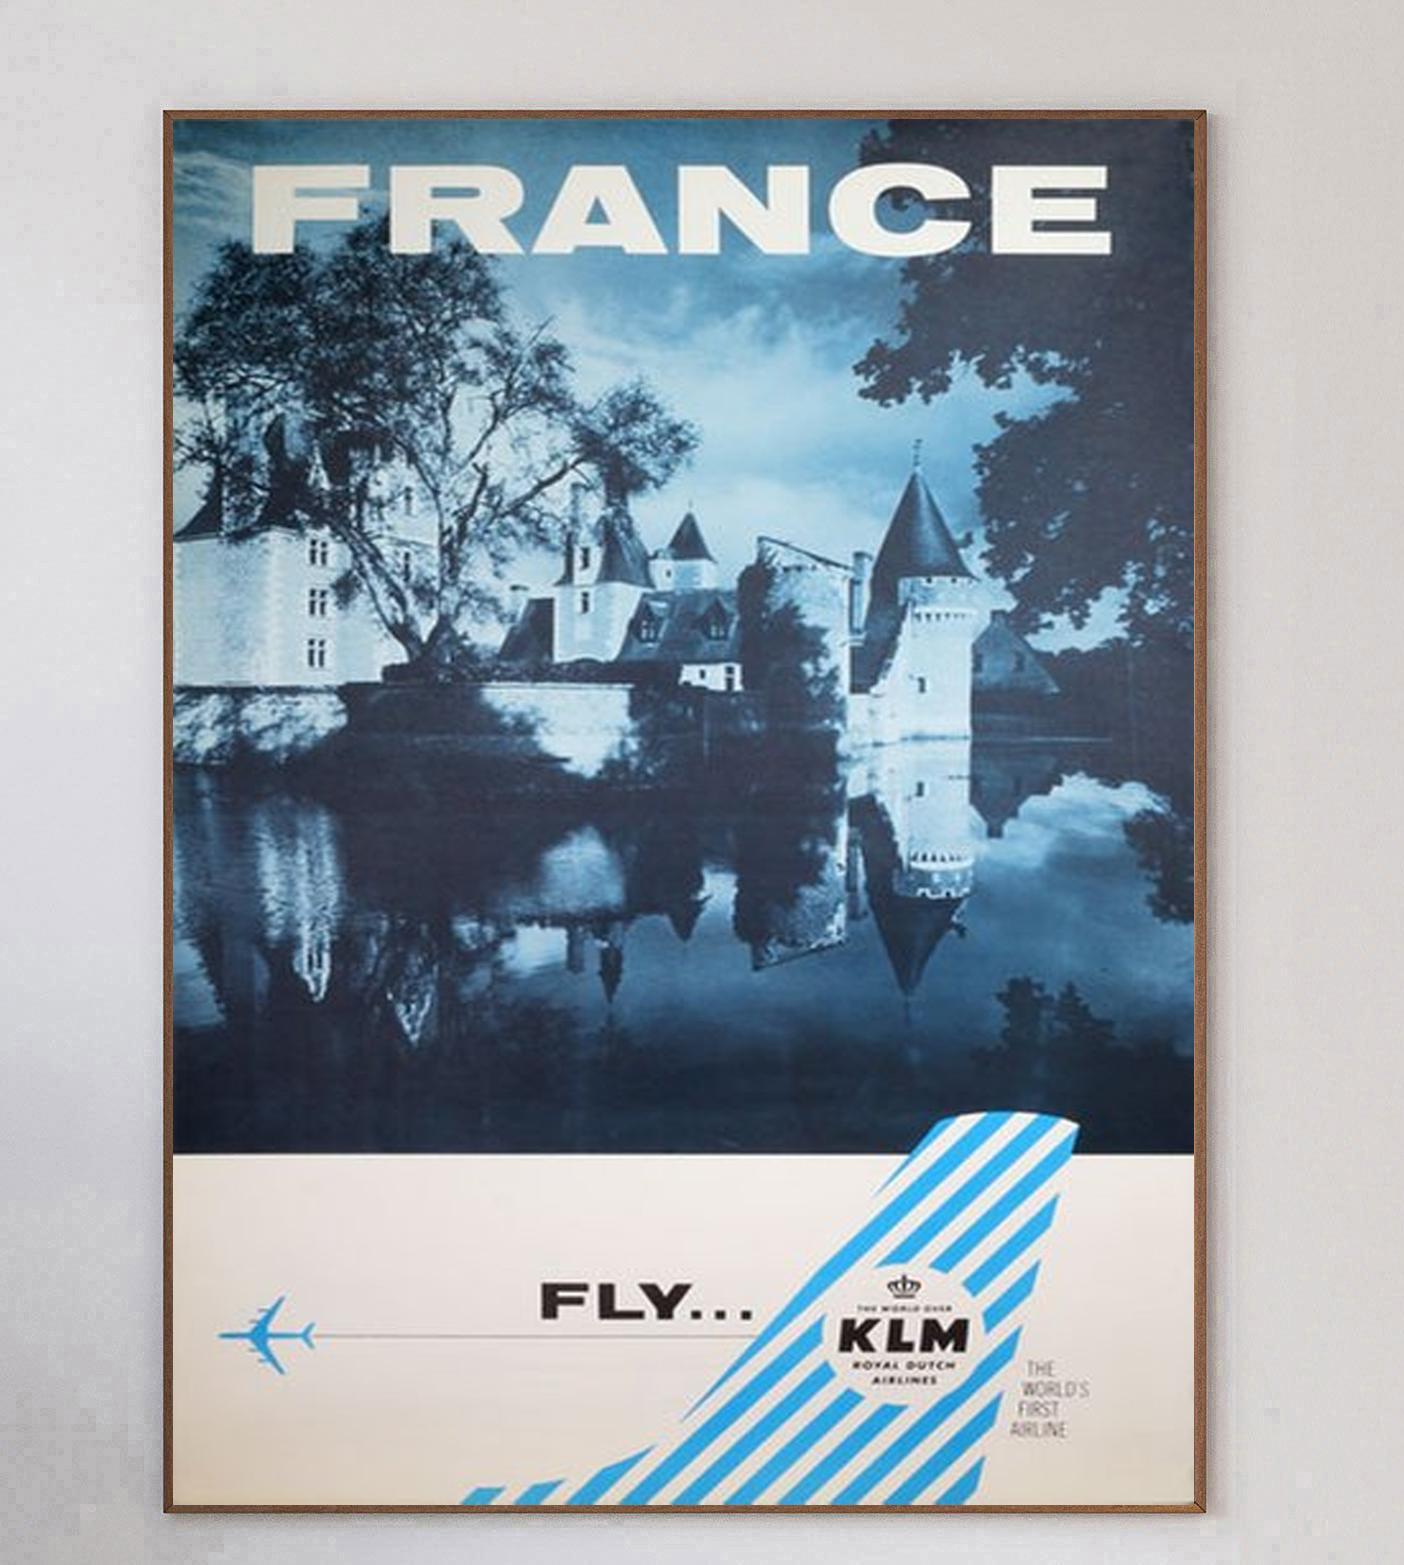 Réalisée par l'artiste français Guy Georget, qui a travaillé sur de nombreuses affiches d'Air France à l'époque, cette affiche promouvant les liaisons de la compagnie aérienne avec le Mexique a été créée en 1962. Air France a été créée en 1933 à la